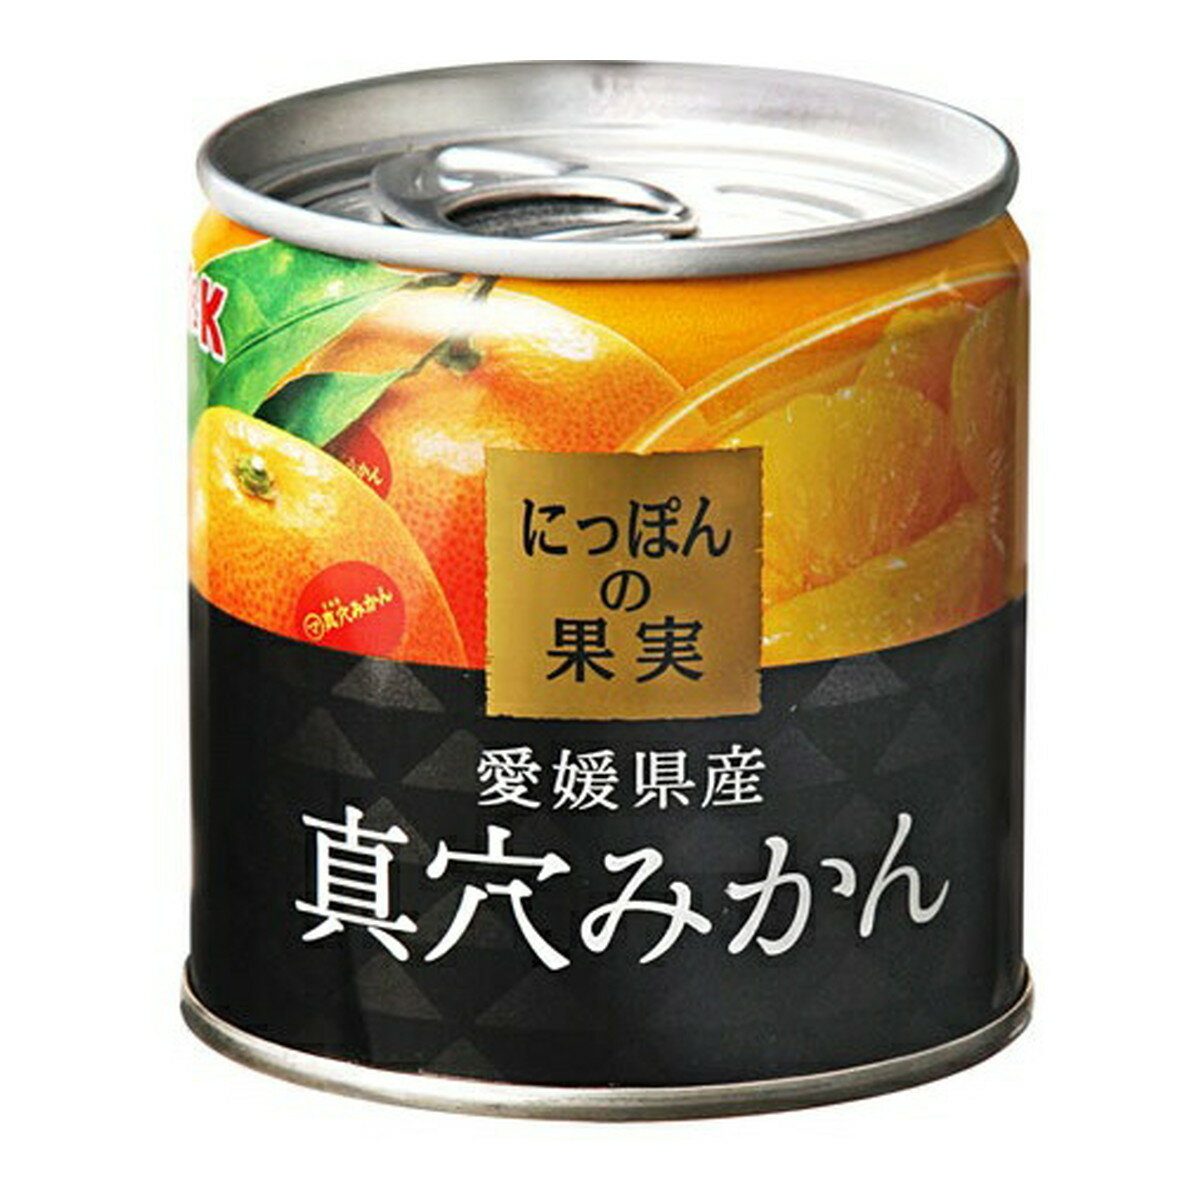 【送料込・まとめ買い×5個セット】KK にっぽんの果実 愛媛県産 真穴みかん 缶詰